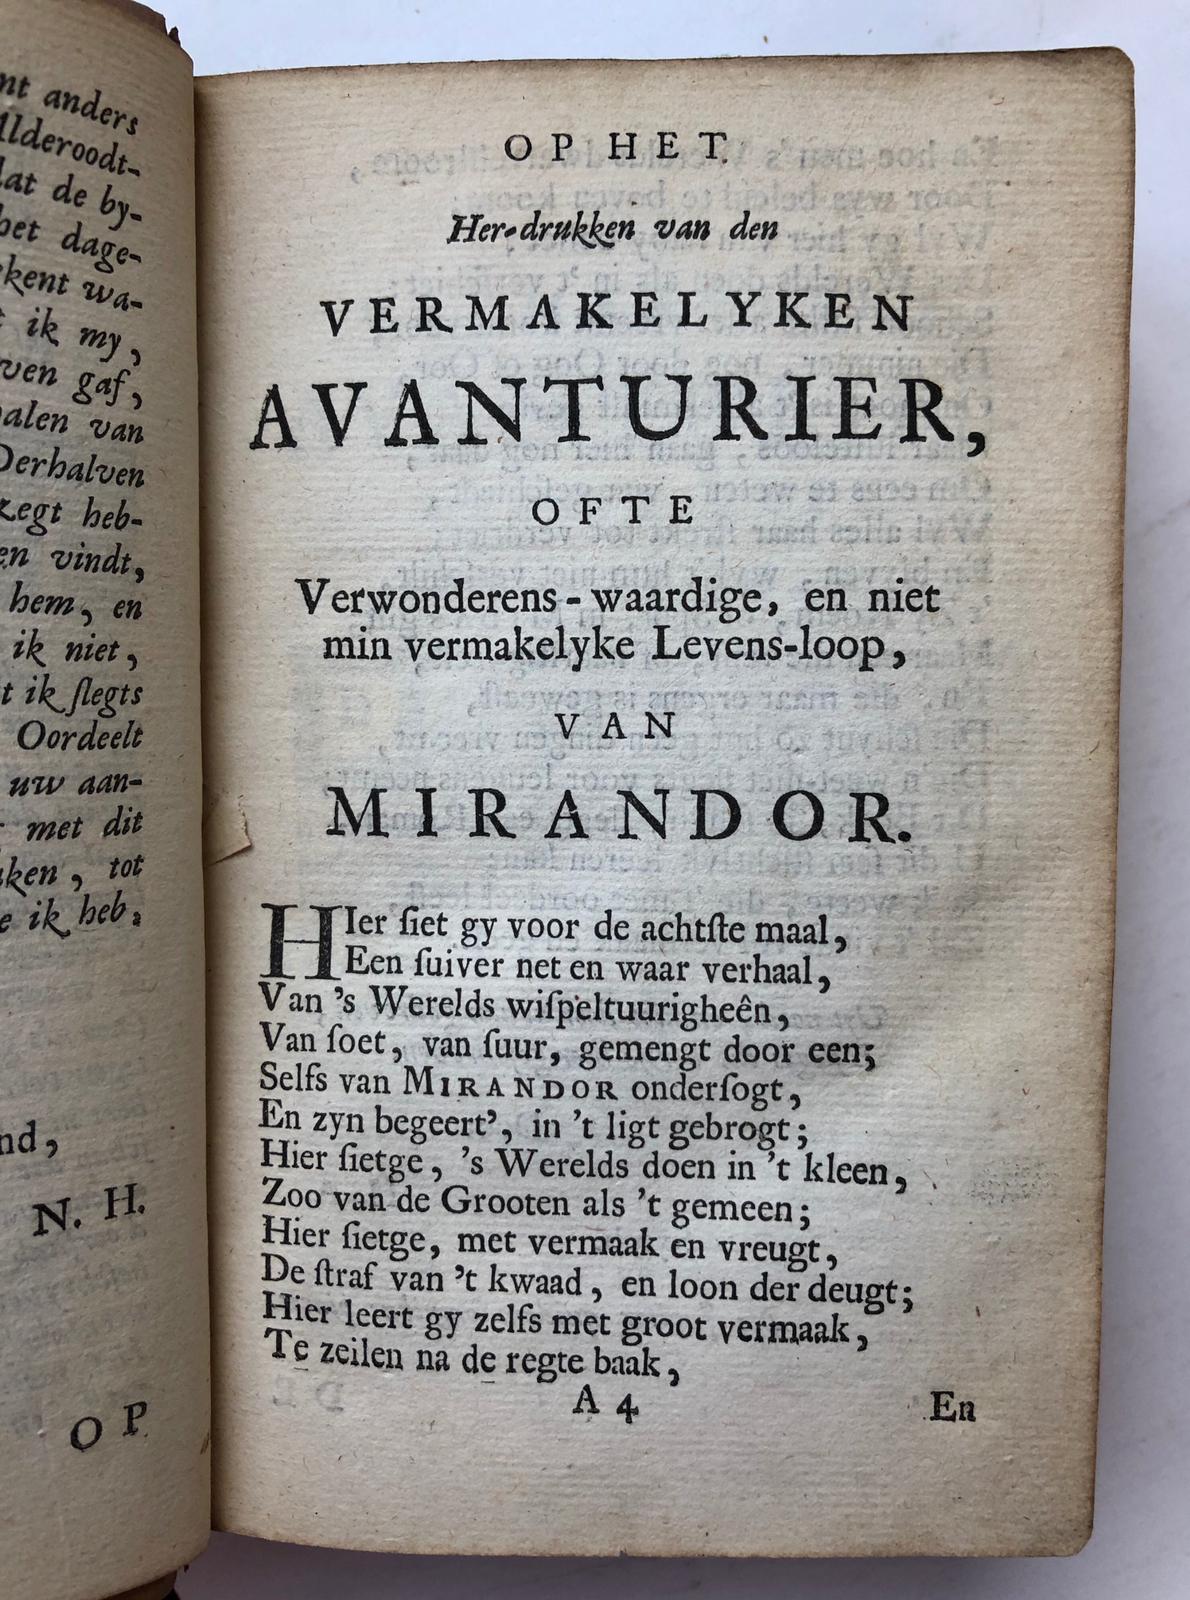 [Literature, The Hague, Culemburg] De vermakelyke avanturier, ofte De wispelturige, en niet min wonderlyke levens-loop van Mirandor, [...]. 8e druk. Amsterdam, Jan Morterre, 1756. [2 delen in 1 band]